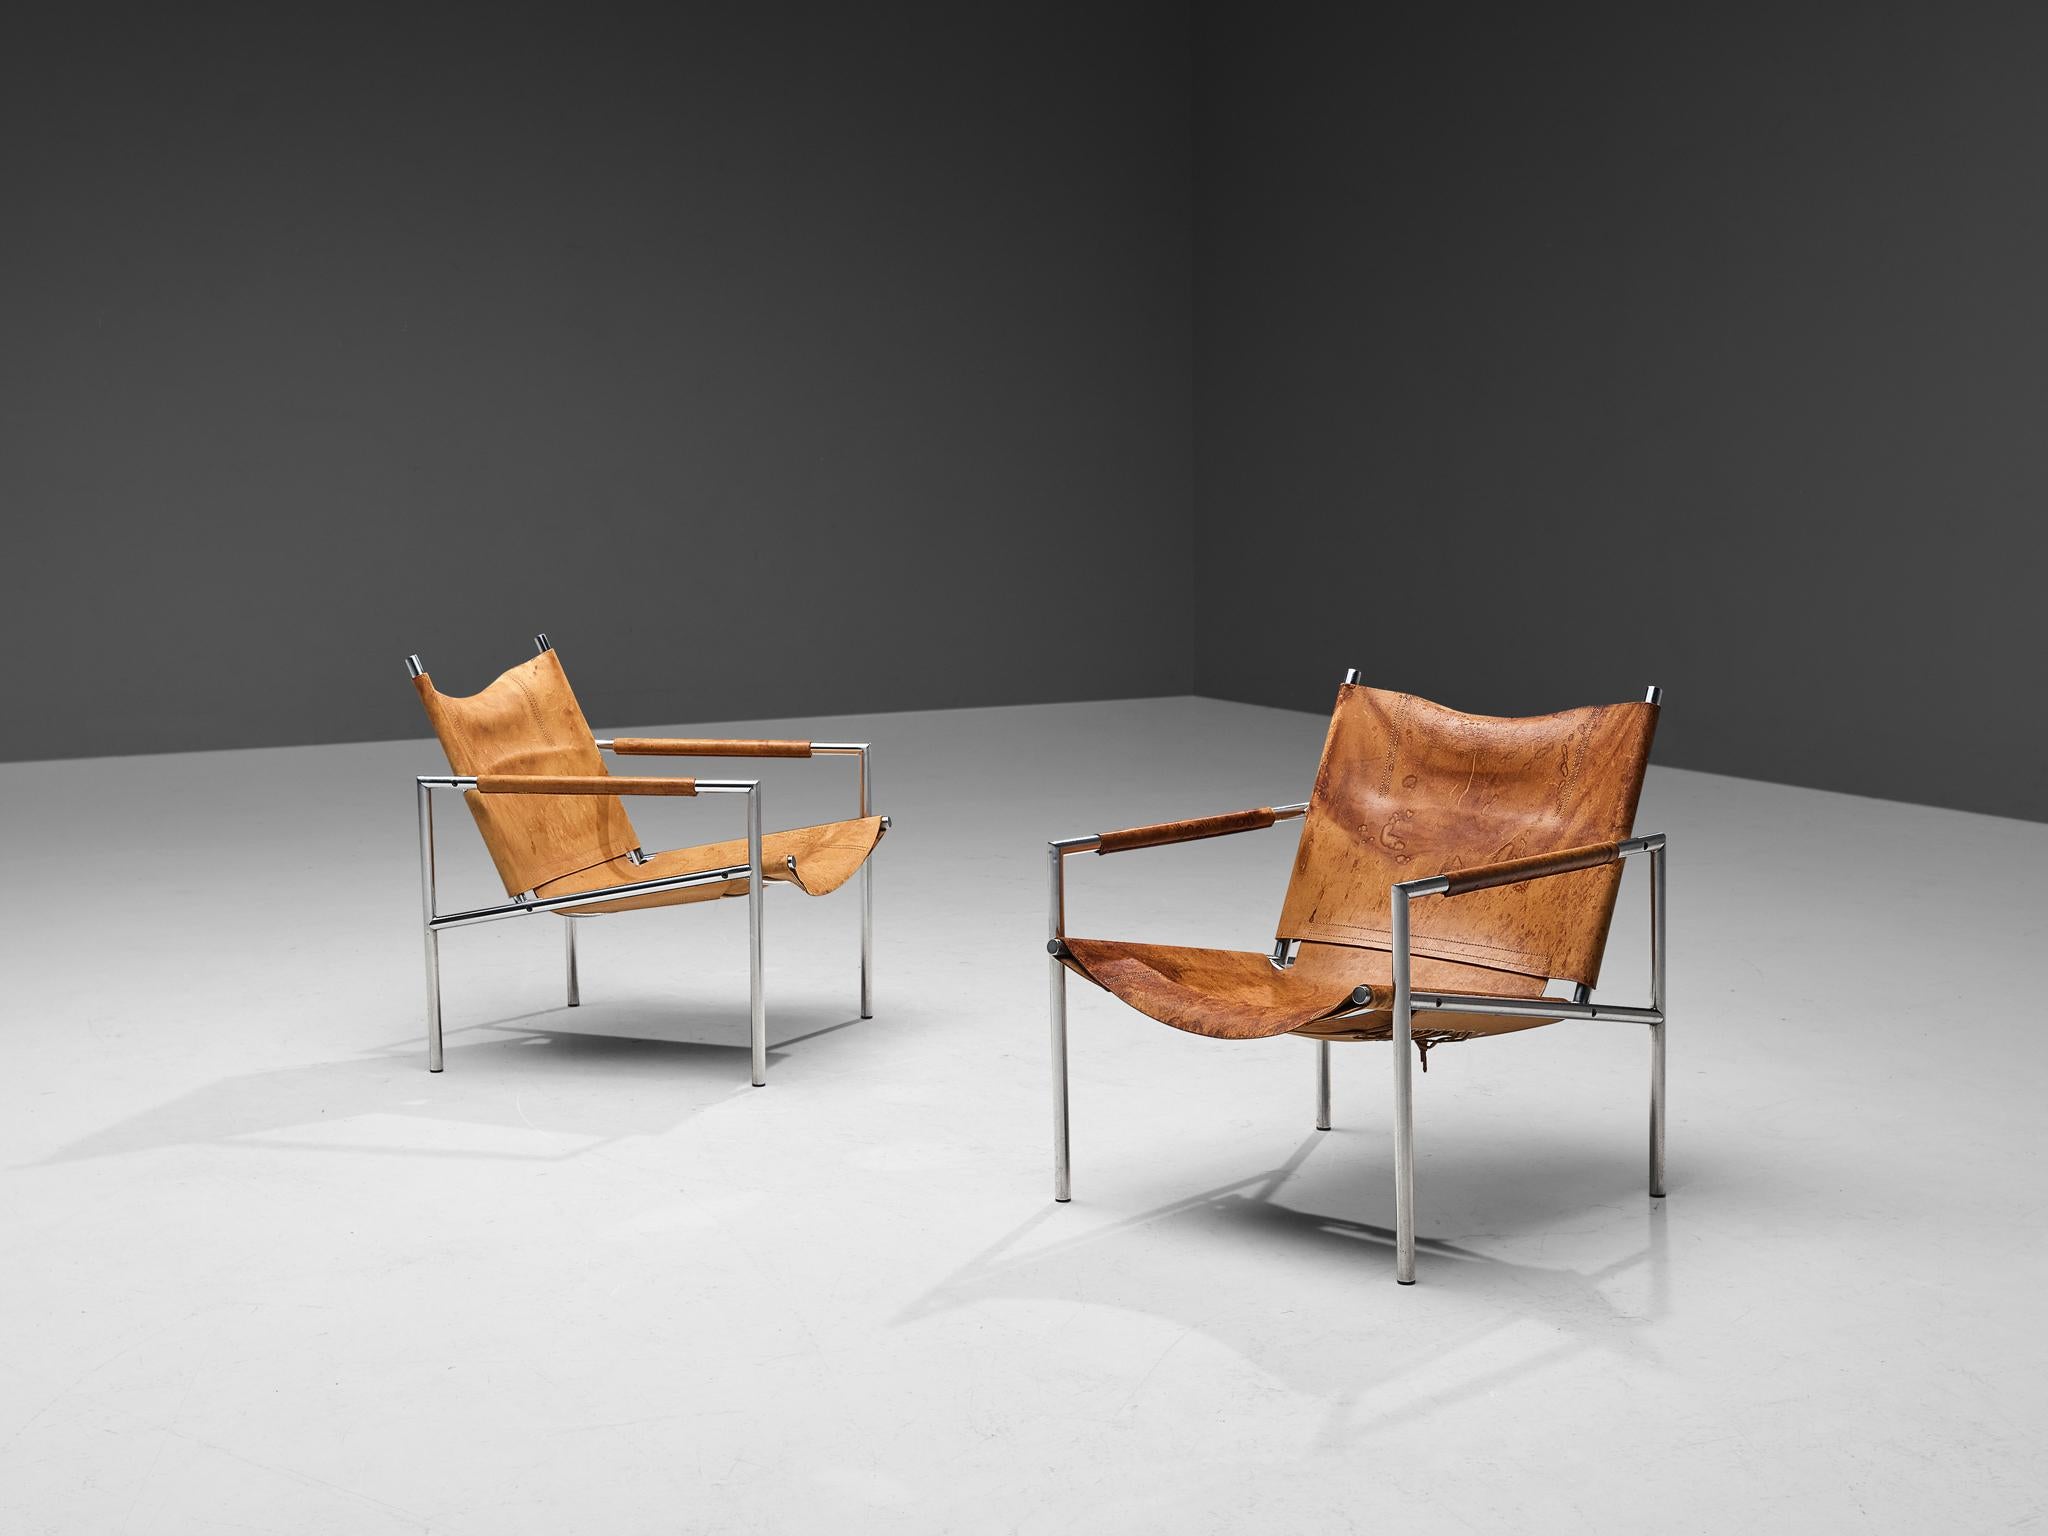 Martin Visser pour 't Steele Bergeijk, paire de chaises longues modèle 'SZ 02', cuir, acier brossé, Pays-Bas, 1965

Ces fauteuils modernes et minimalistes sont fabriqués à partir d'un tube d'acier brossé associé à un revêtement en cuir cognac souple